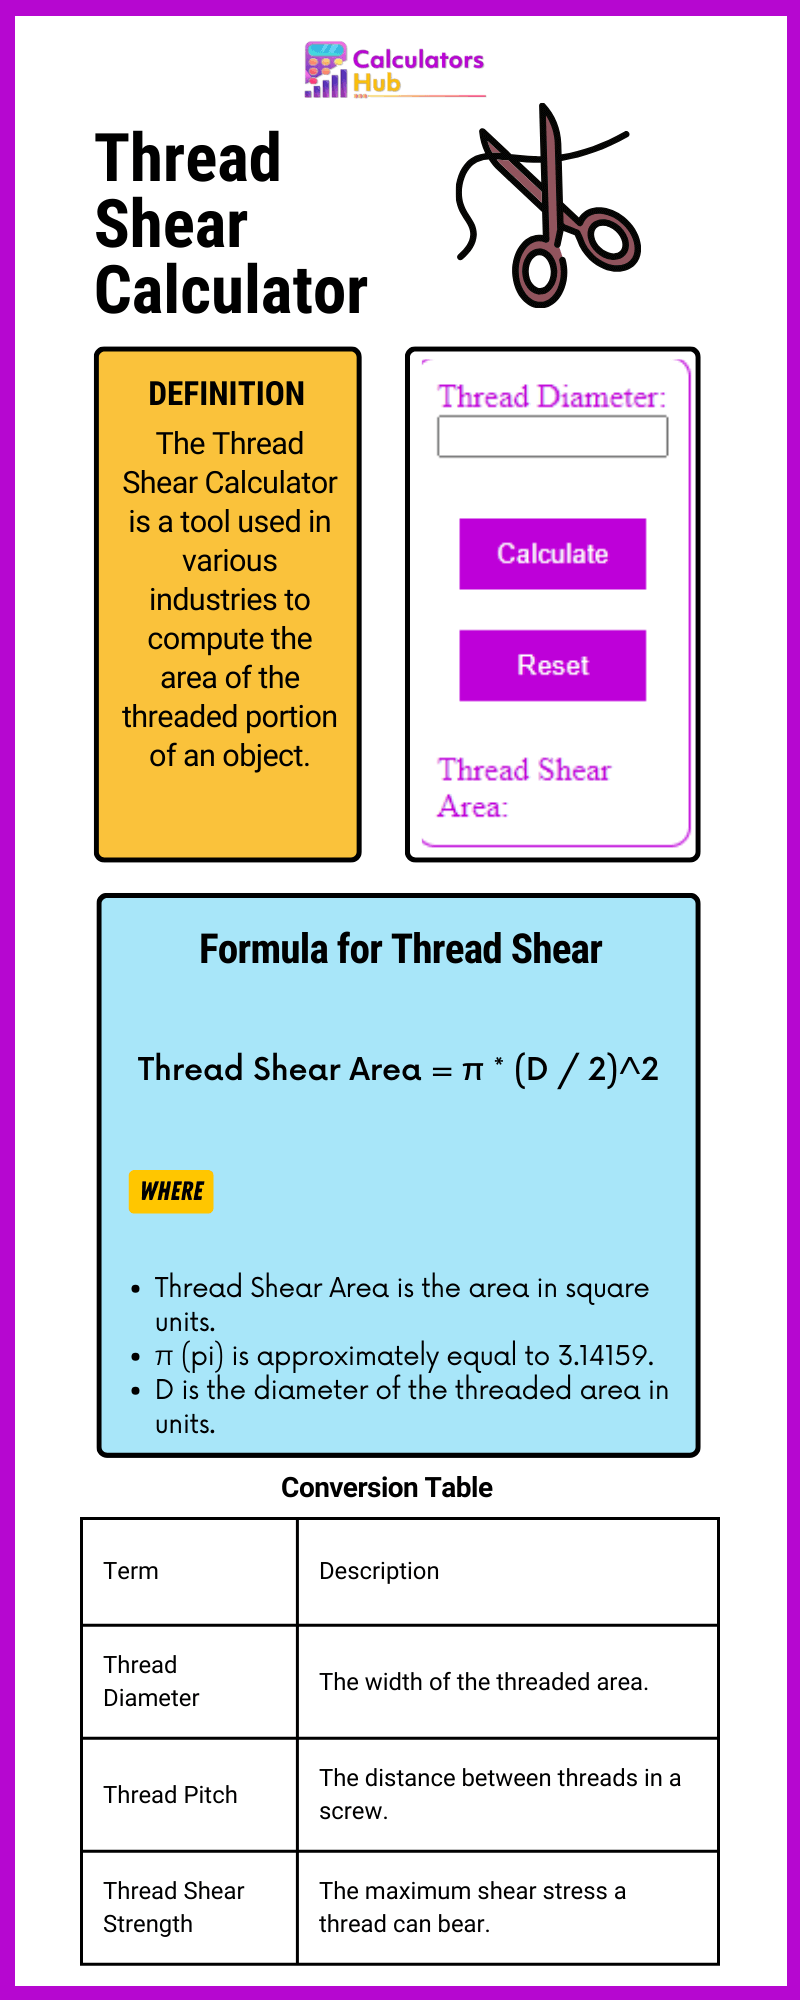 Thread Shear Calculator